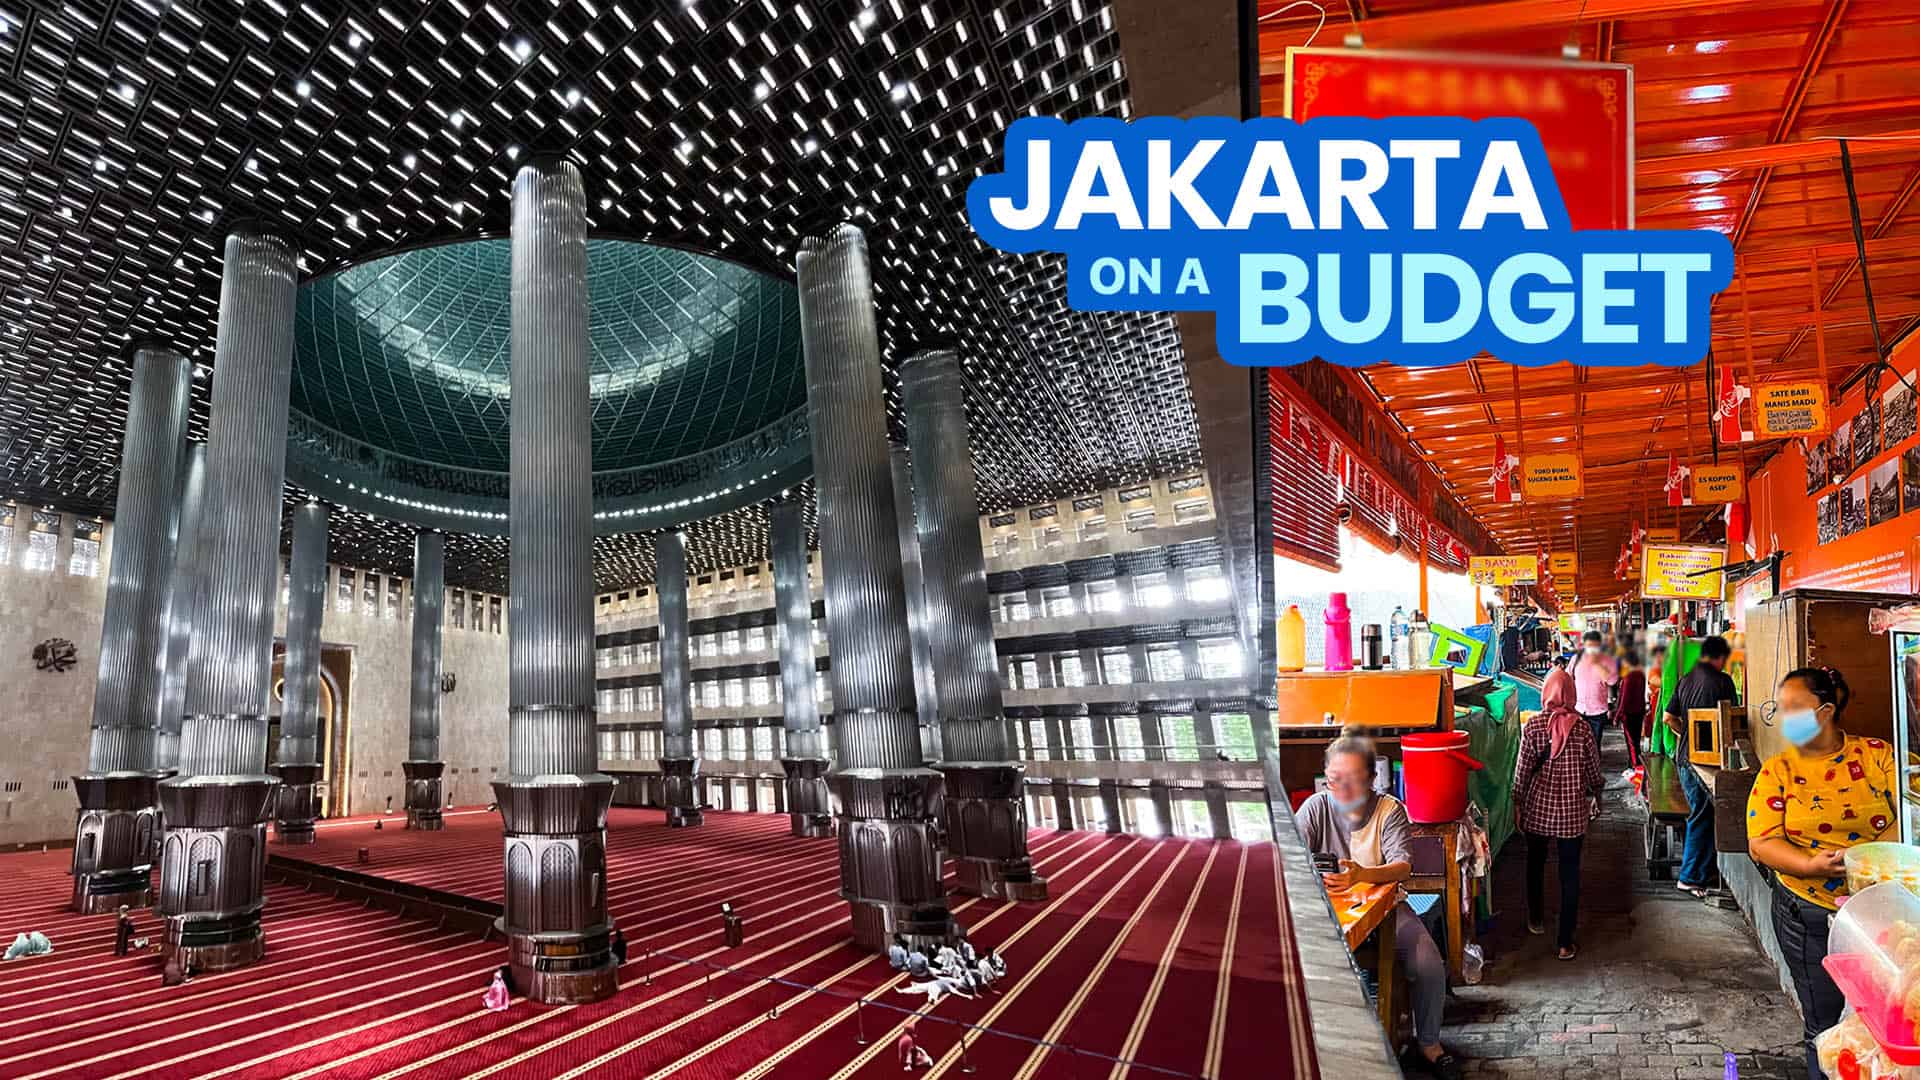 ДЖАКАРТА 2022 ПУТЕВОДИТЕЛЬ с образцом маршрута и бюджета + требования Индонезии